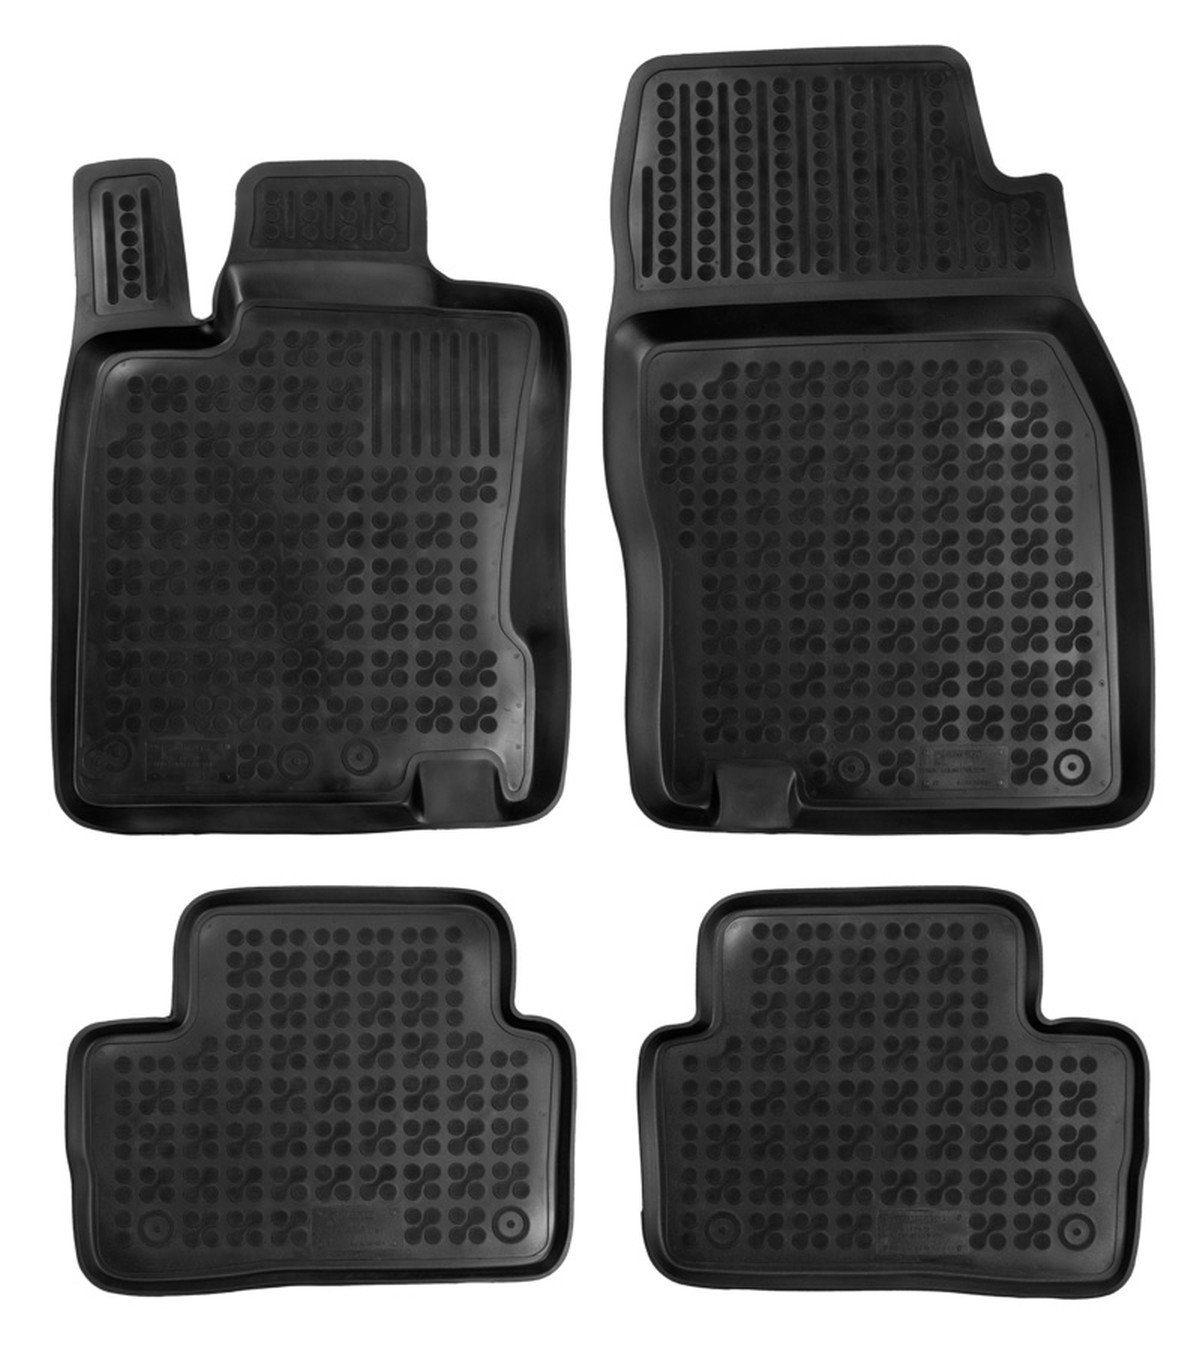 AZUGA Auto-Fußmatten Gummi-Fußmatten passend für Renault Kadjar ab 2015,  für Renault Kadjar SUV, passgenaue Gummimatten für Renault Kadjar ab 2015 -  KEINE Universalmatten